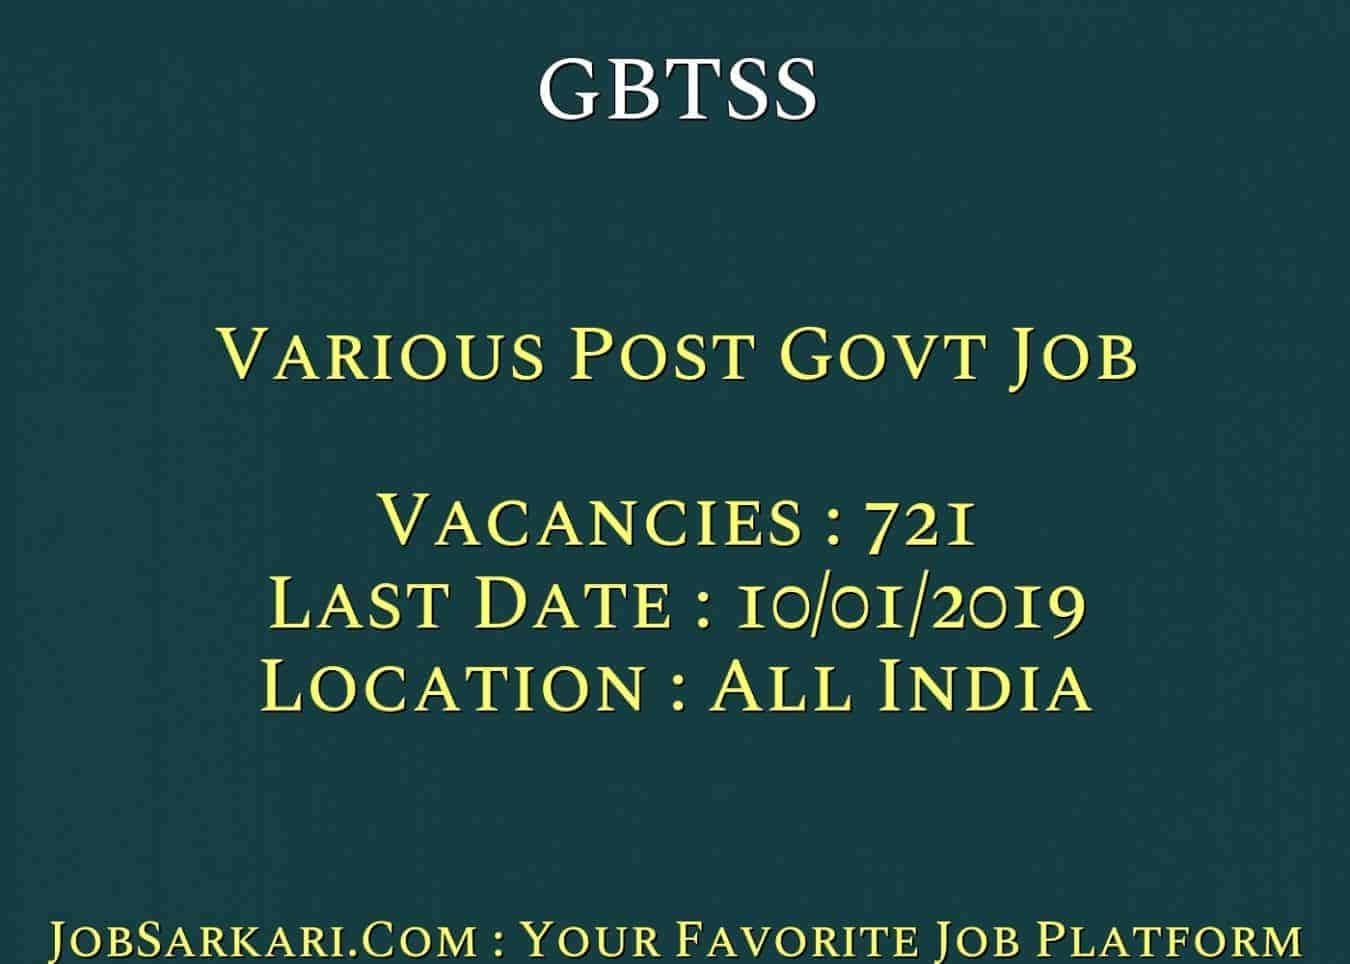 GBTSS Recruitment 2018 For Various Post Govt Job